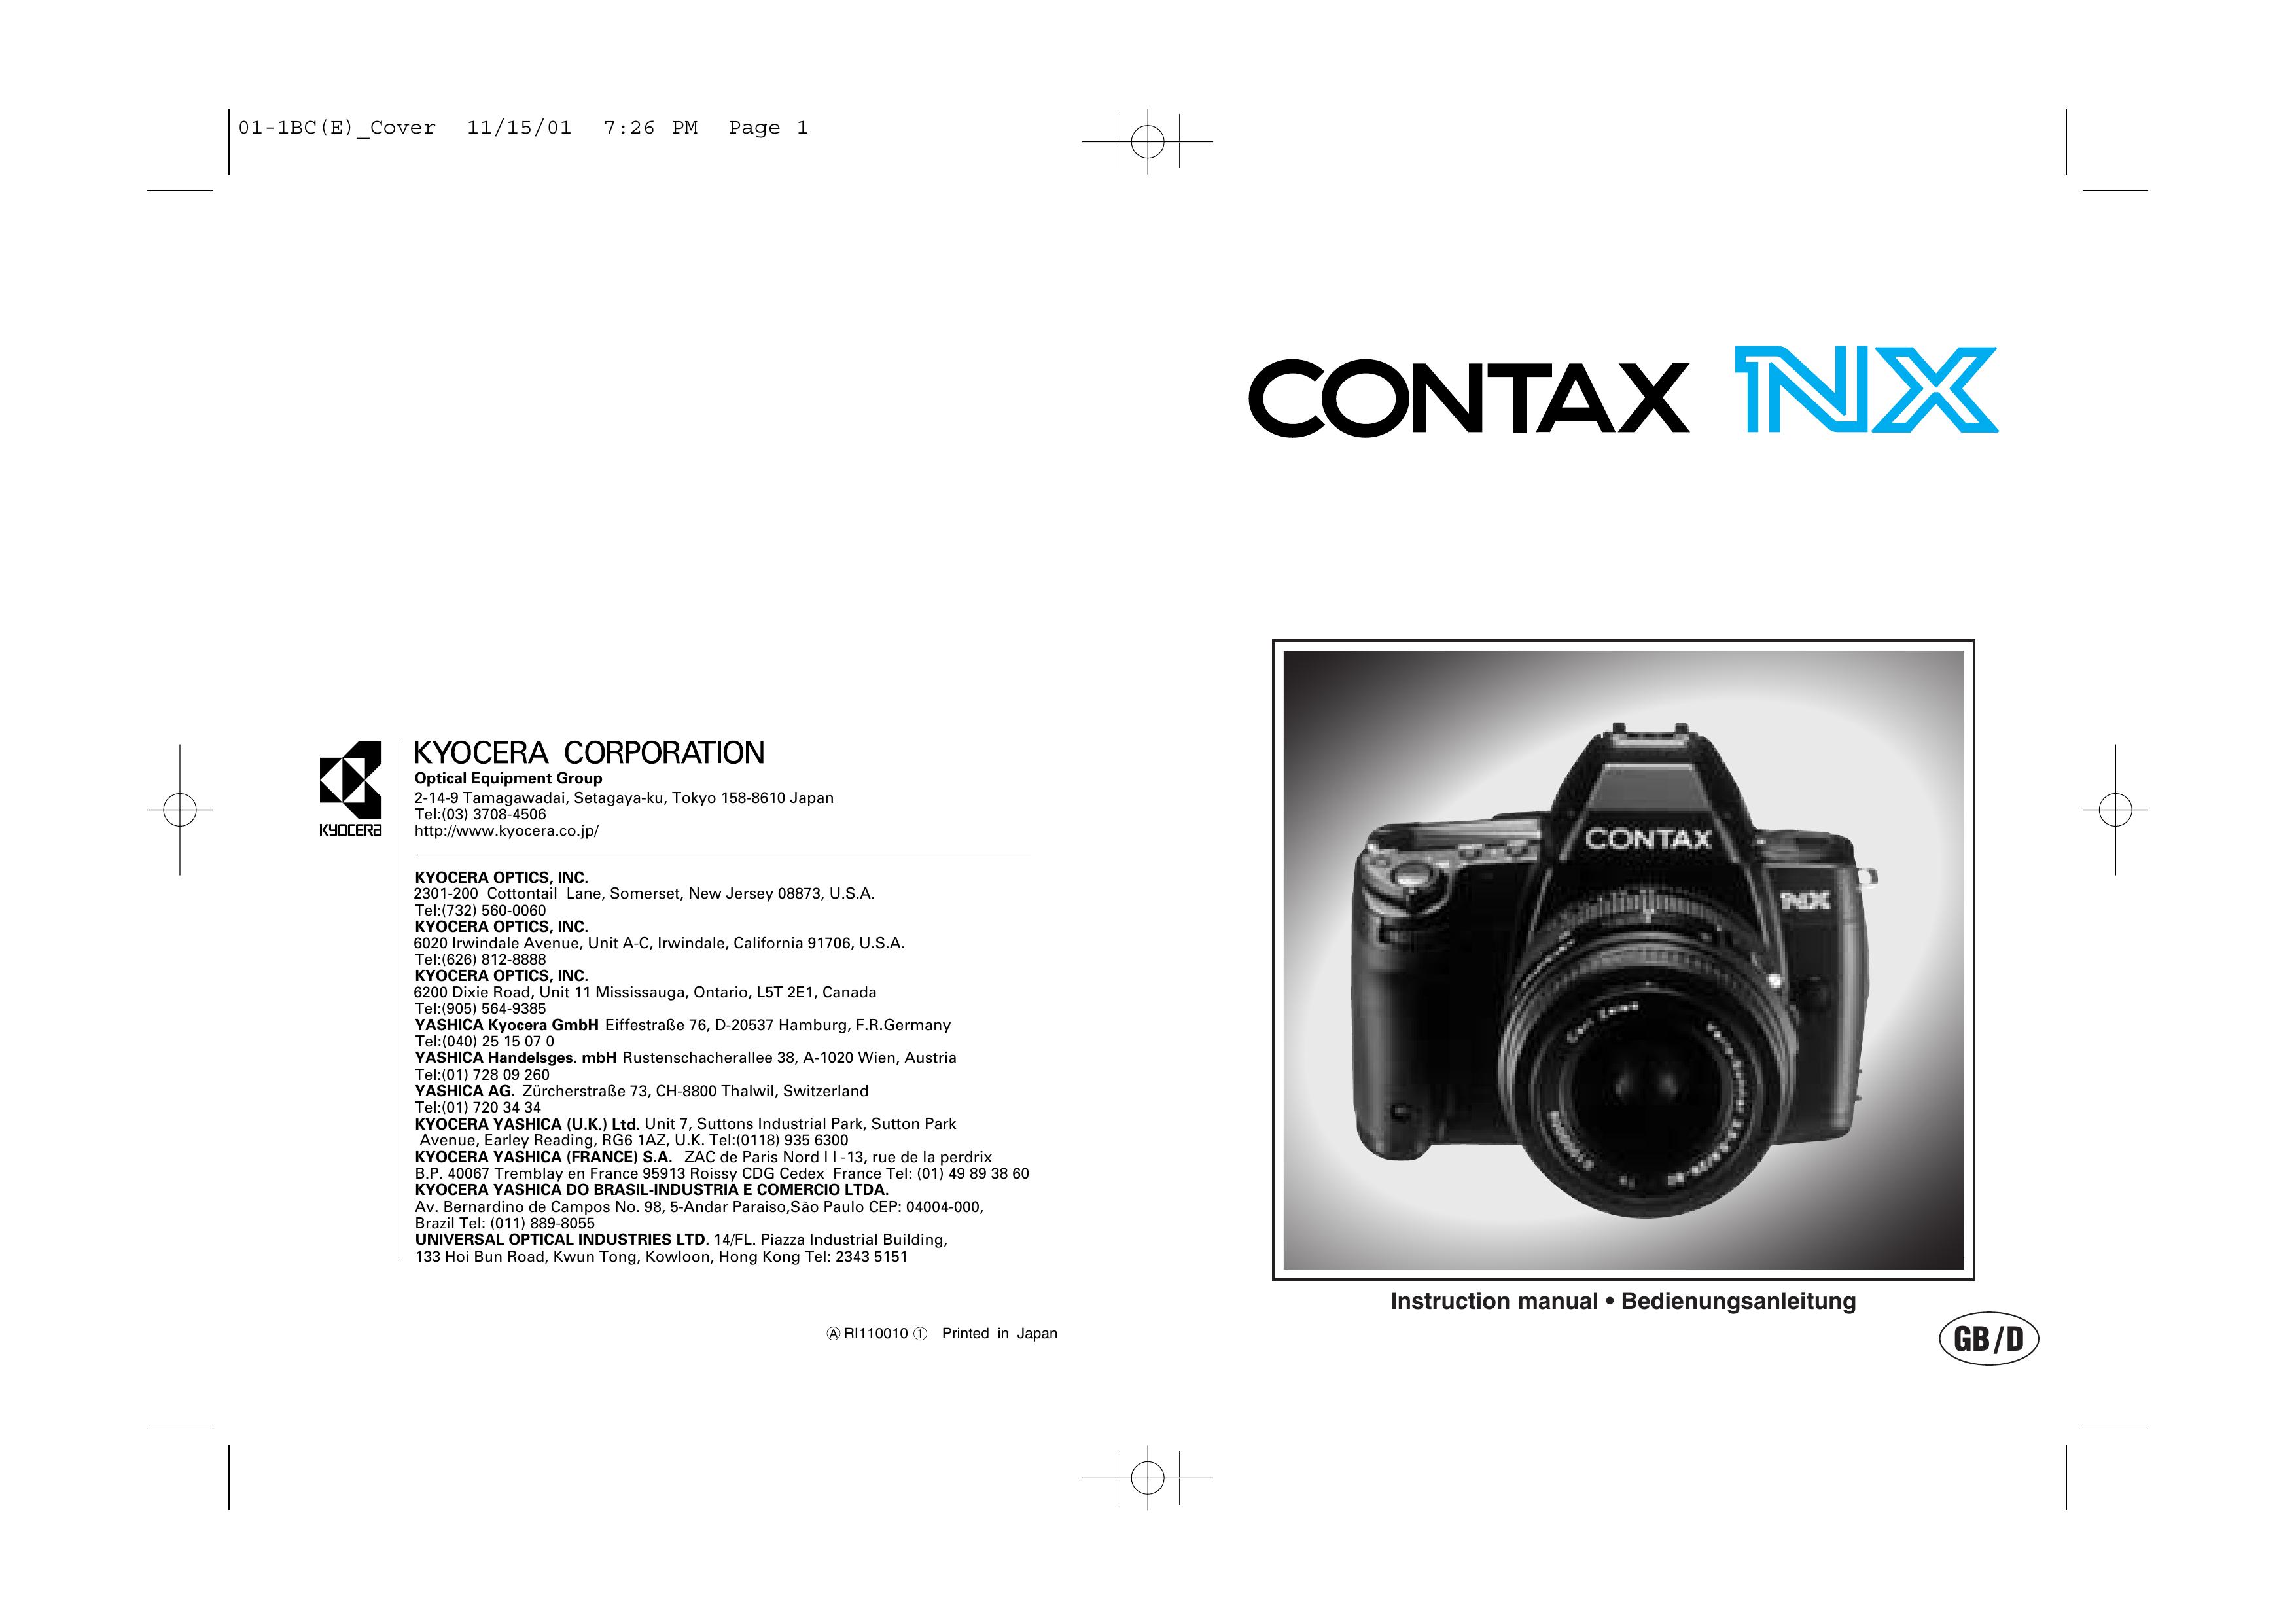 Kyocera NX Digital Camera User Manual